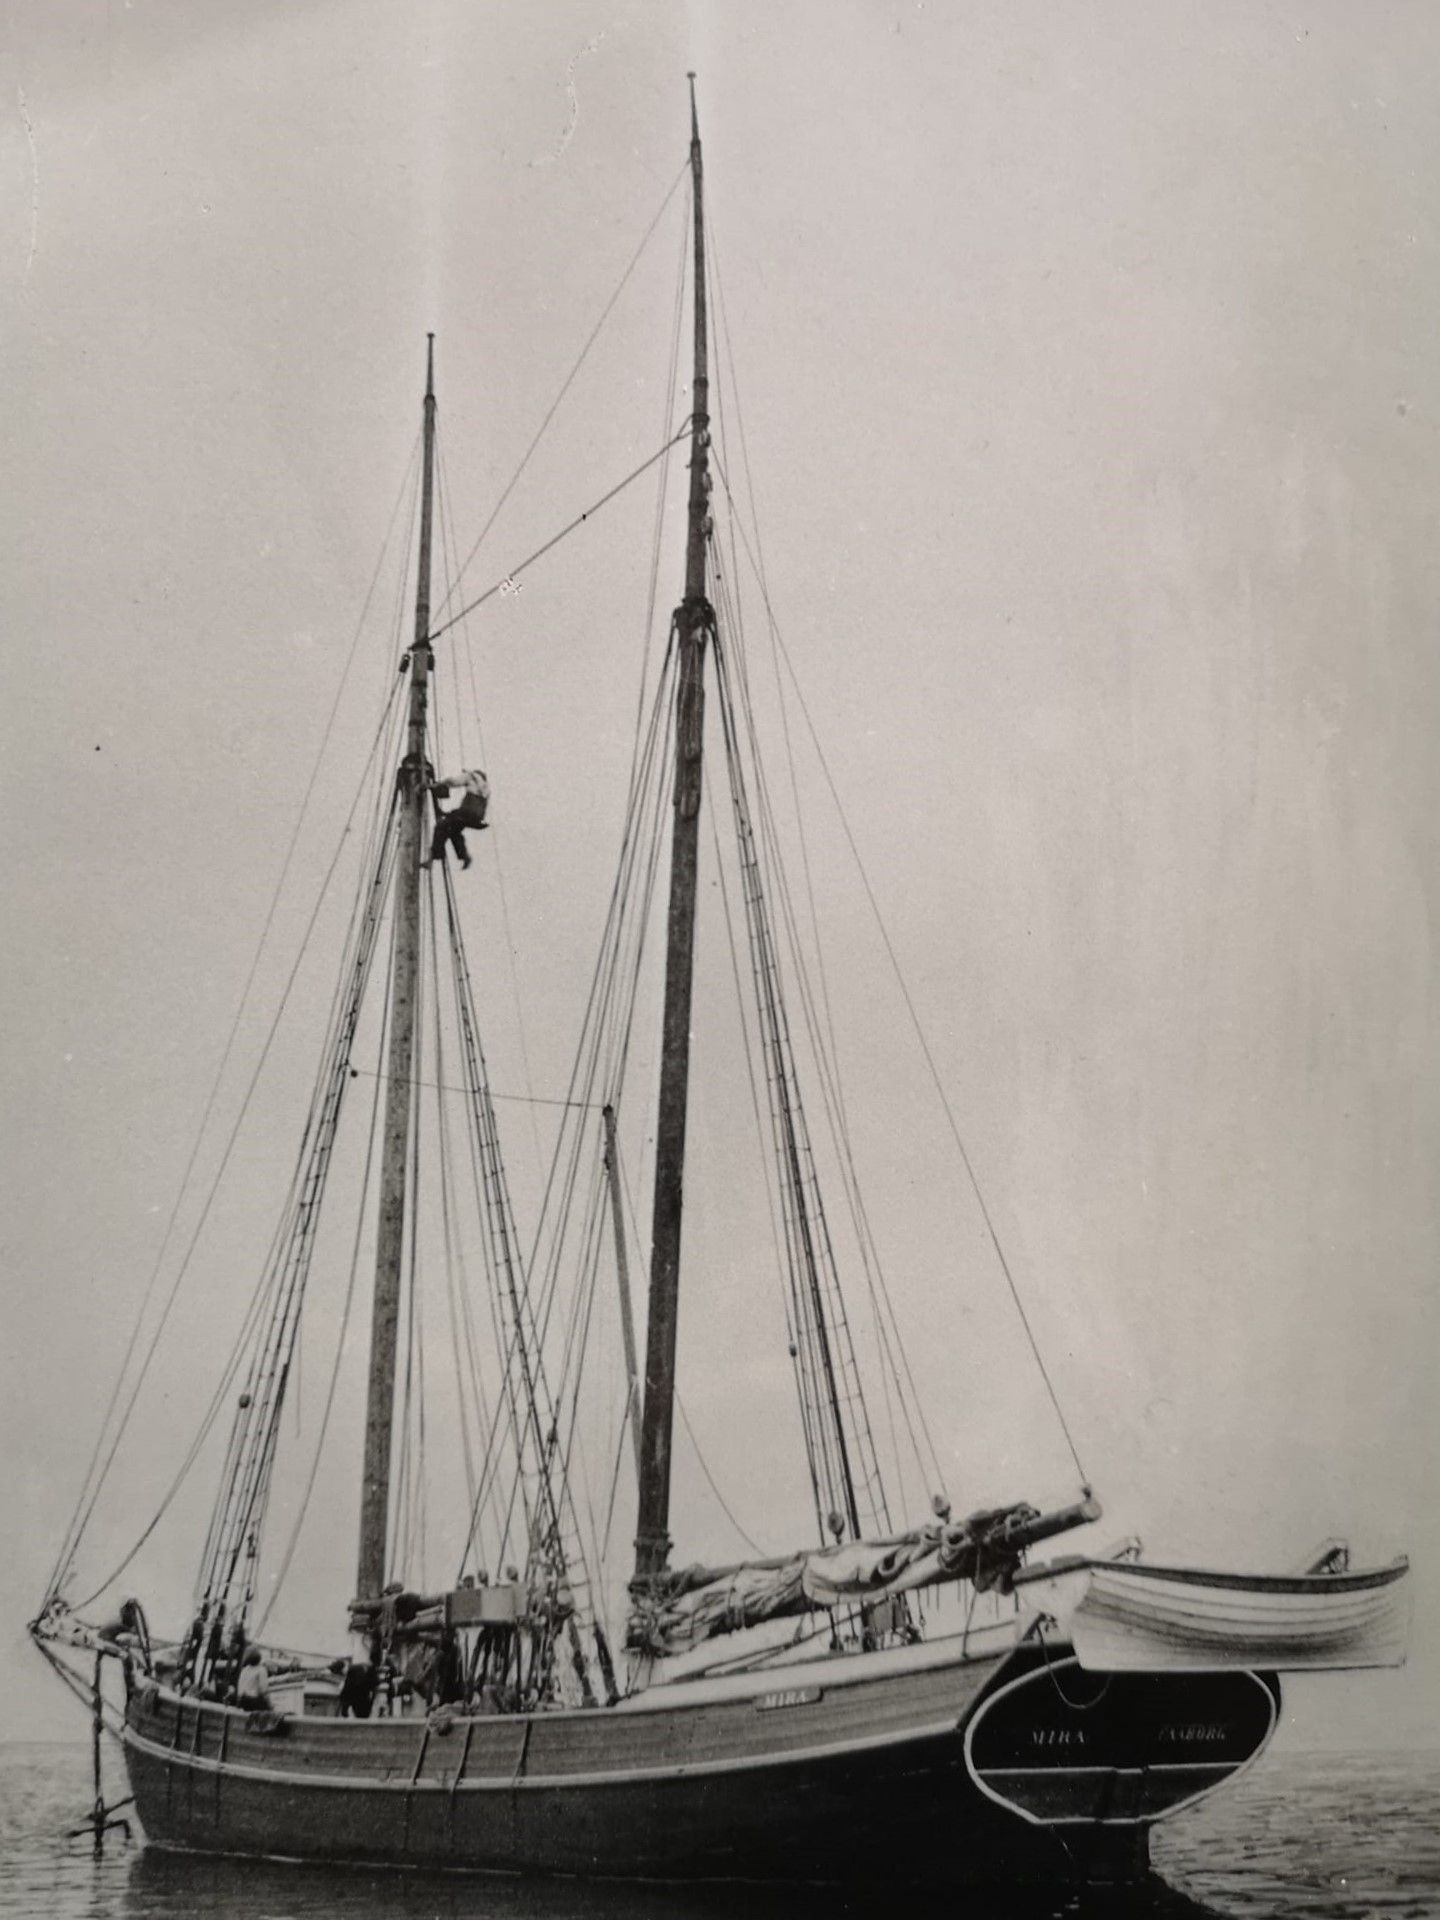 Et sort/hvidt foto af en sejlbåd i vandet